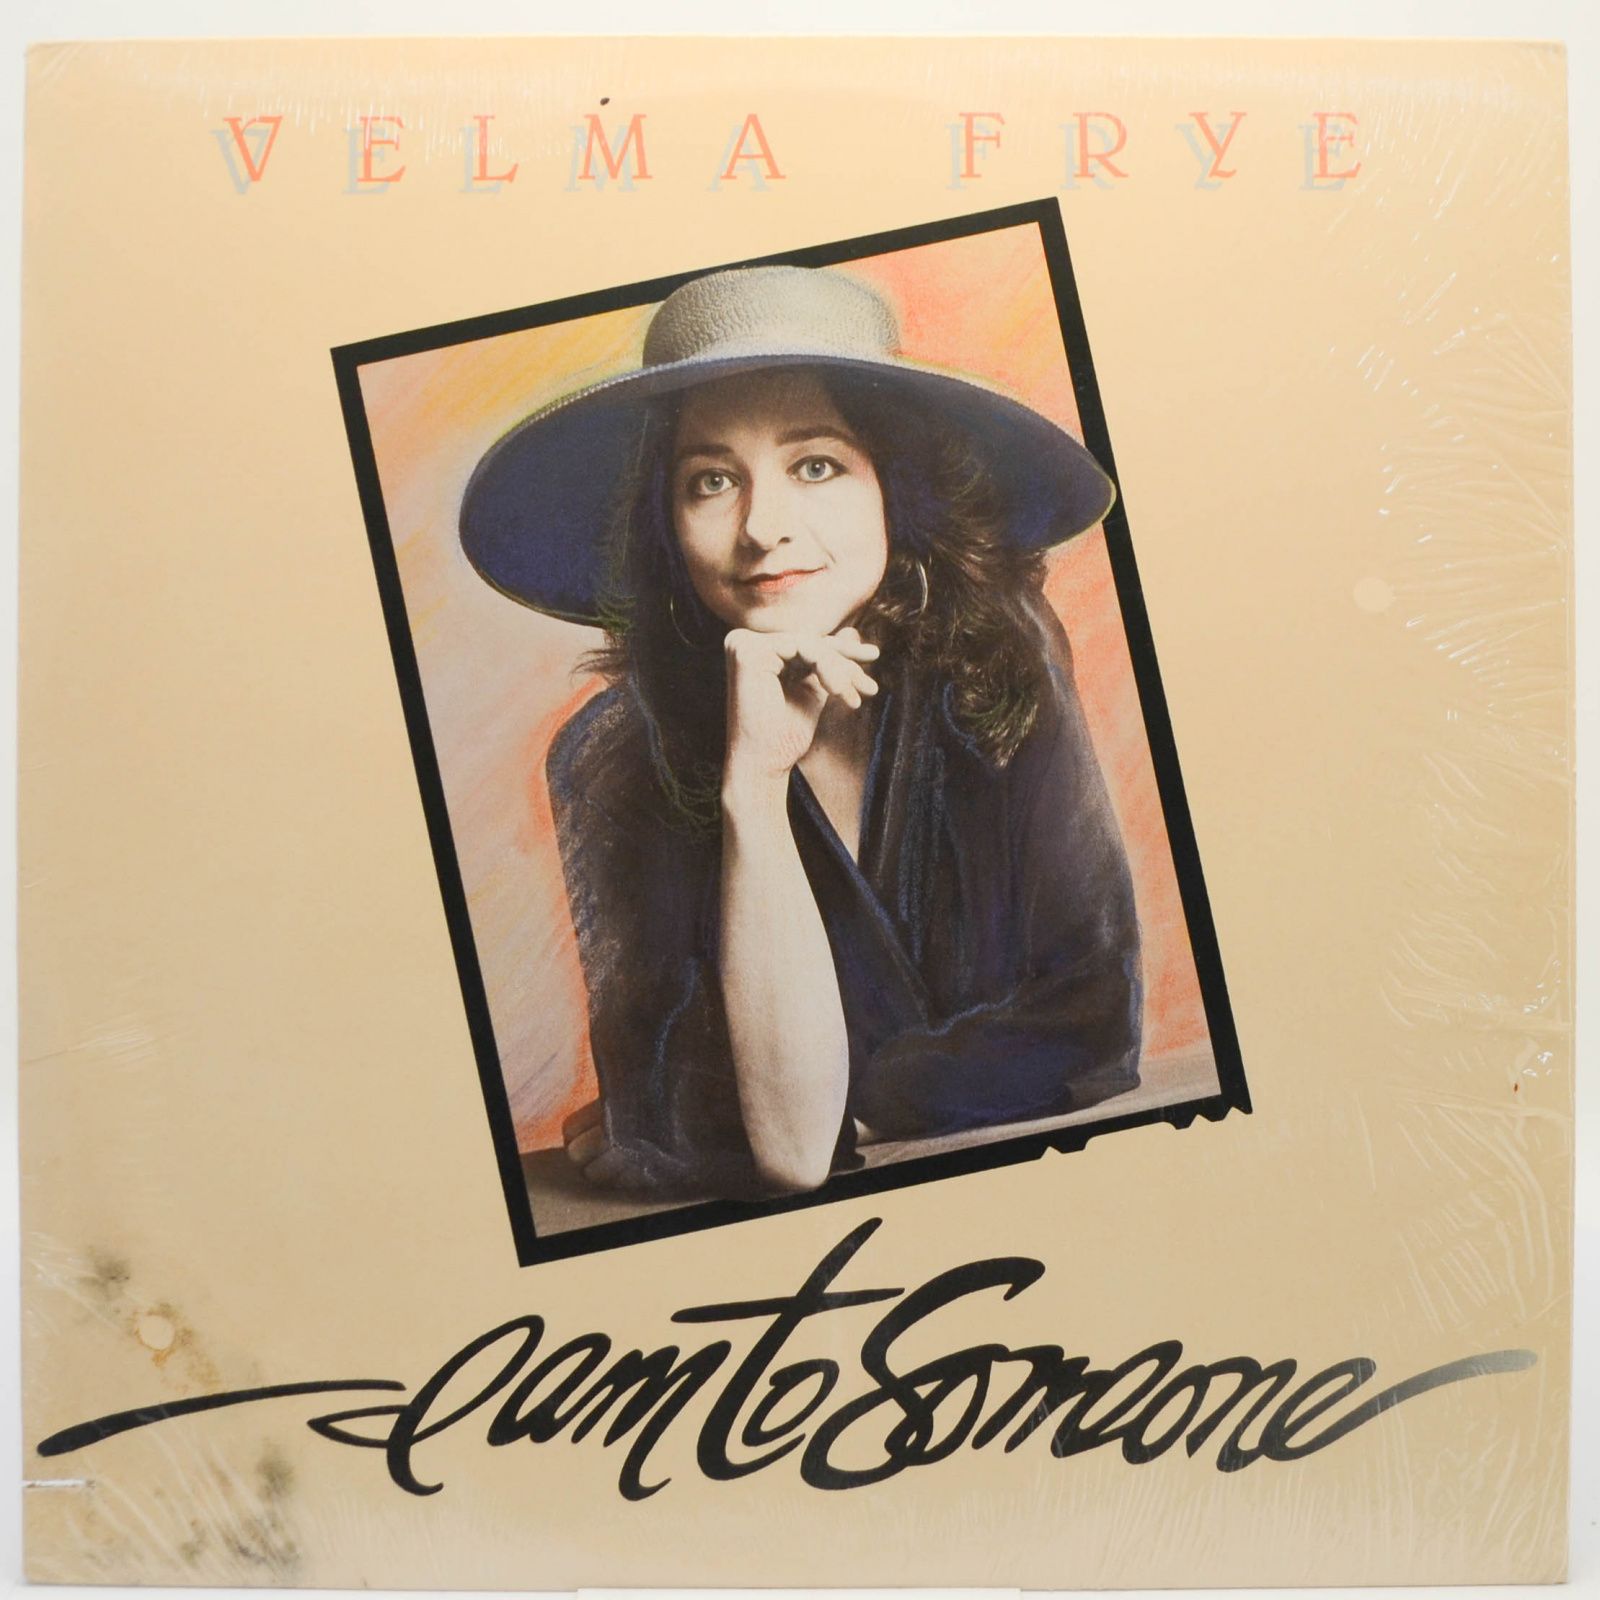 Velma Frye — I Am To Someone, 1988